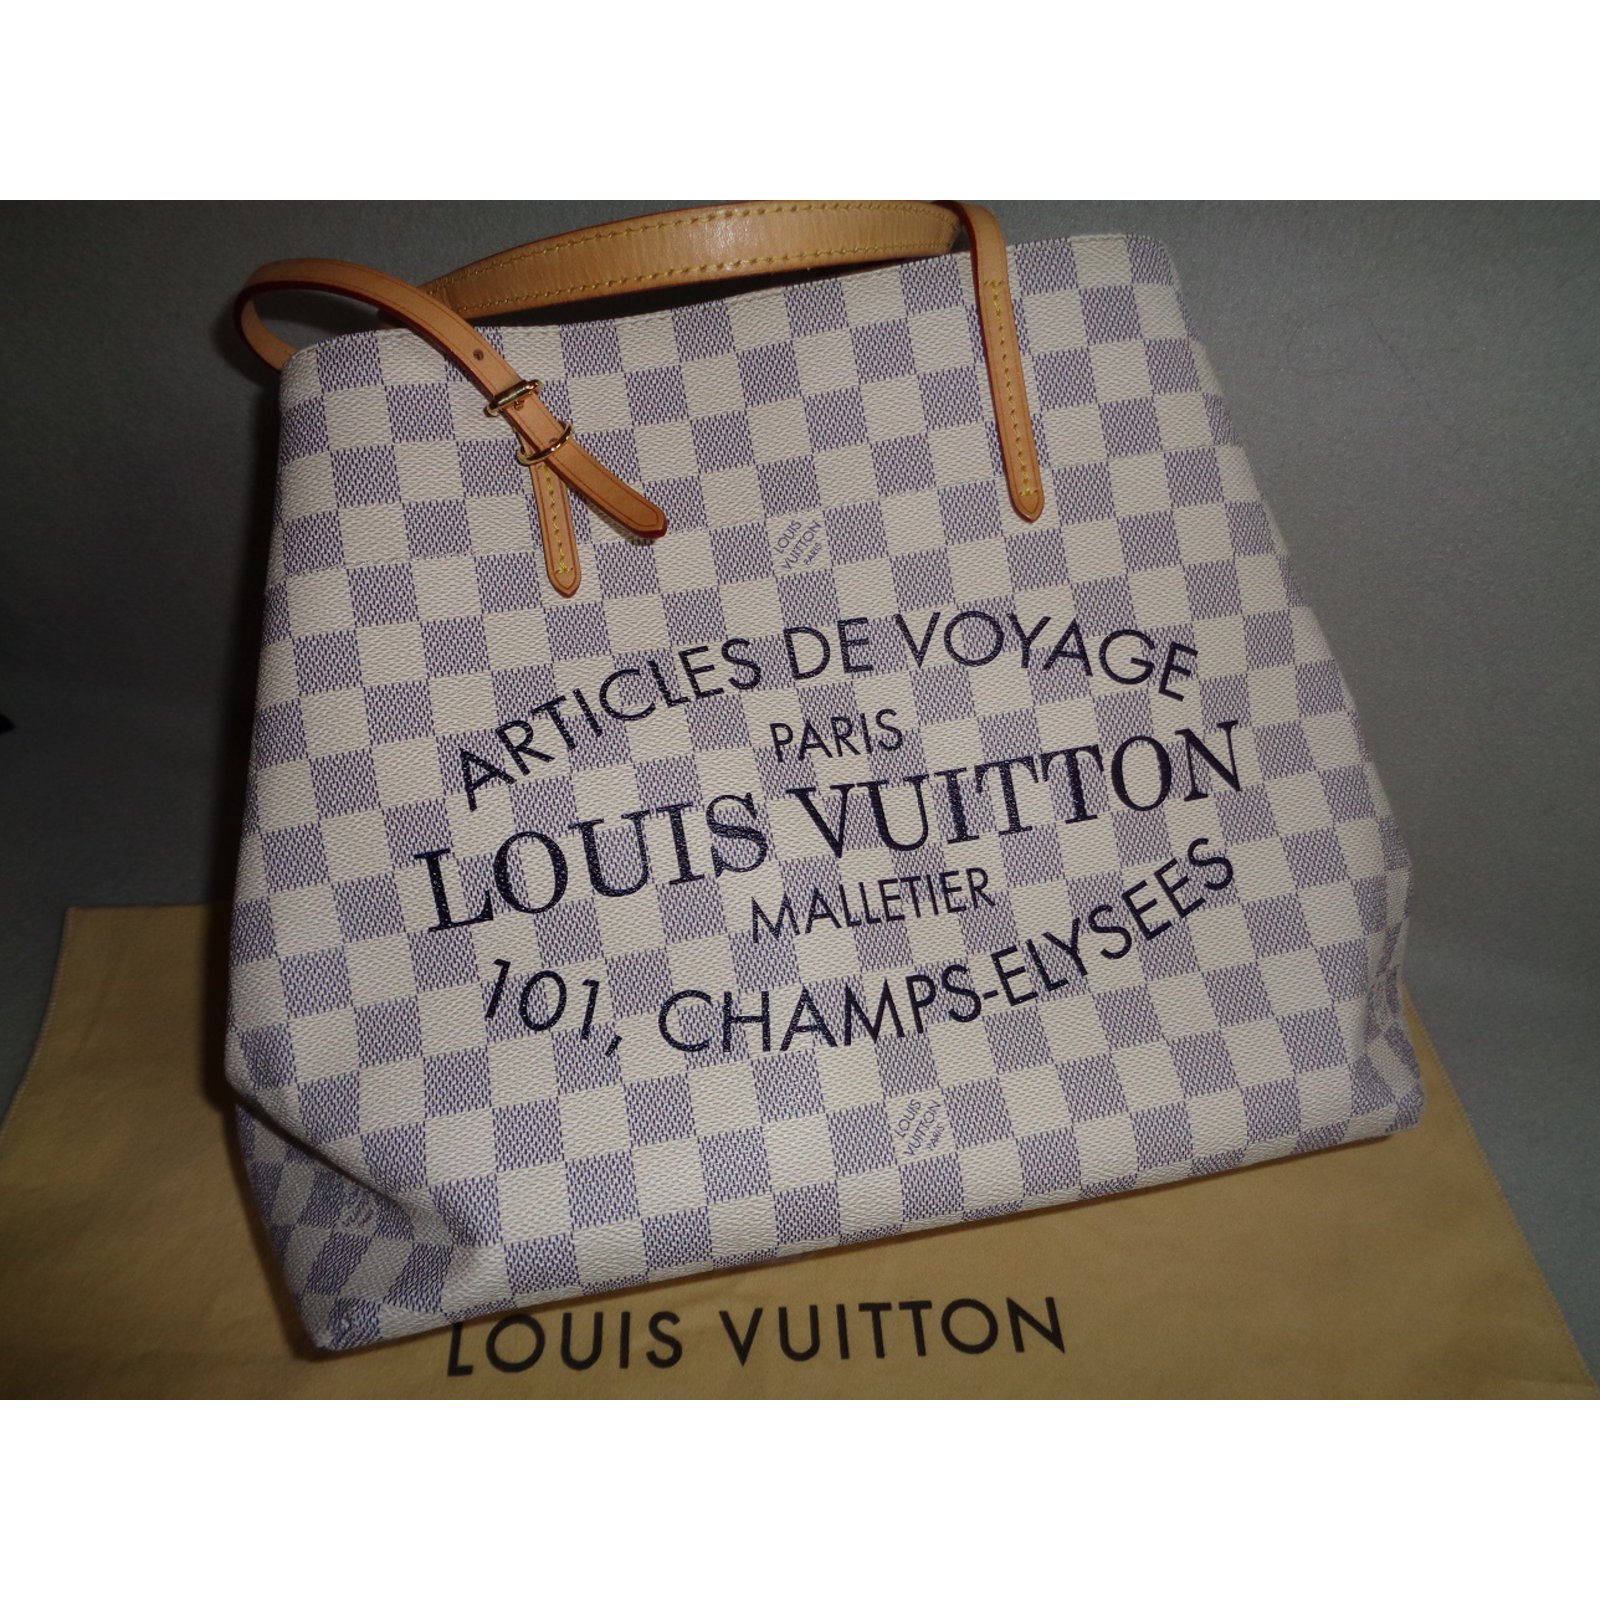 Louis Vuitton Cabas MM Damier Azur Articles De Voyage Limited